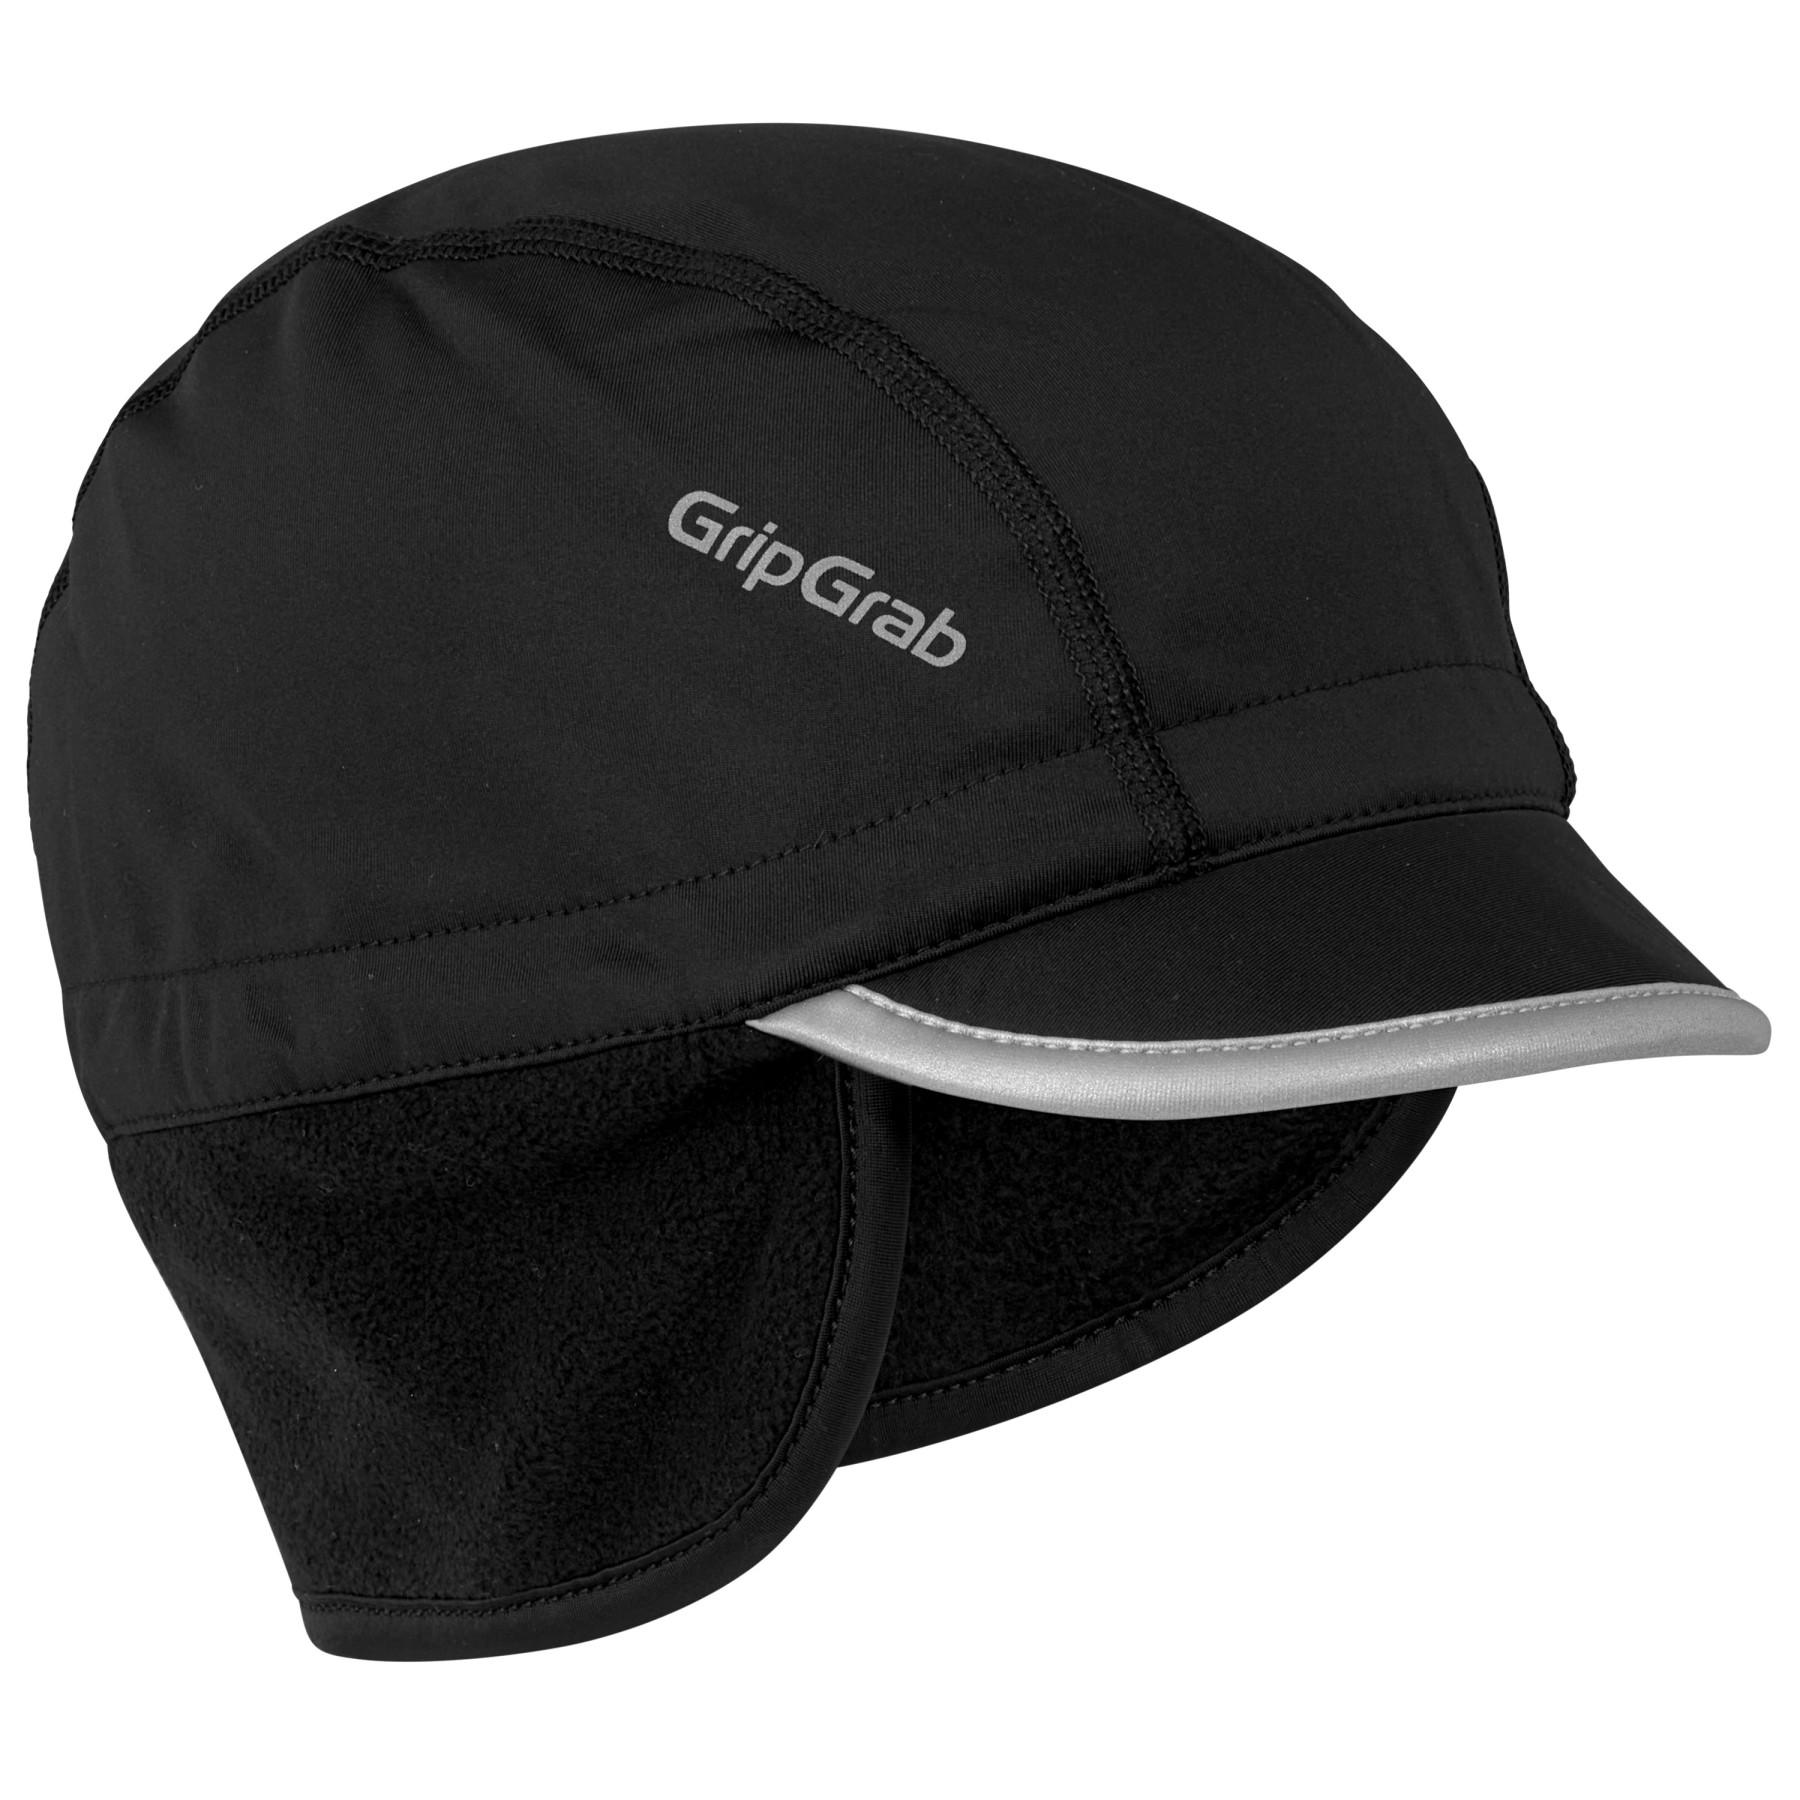 Gripgrab Winter Cycling Cap - Black